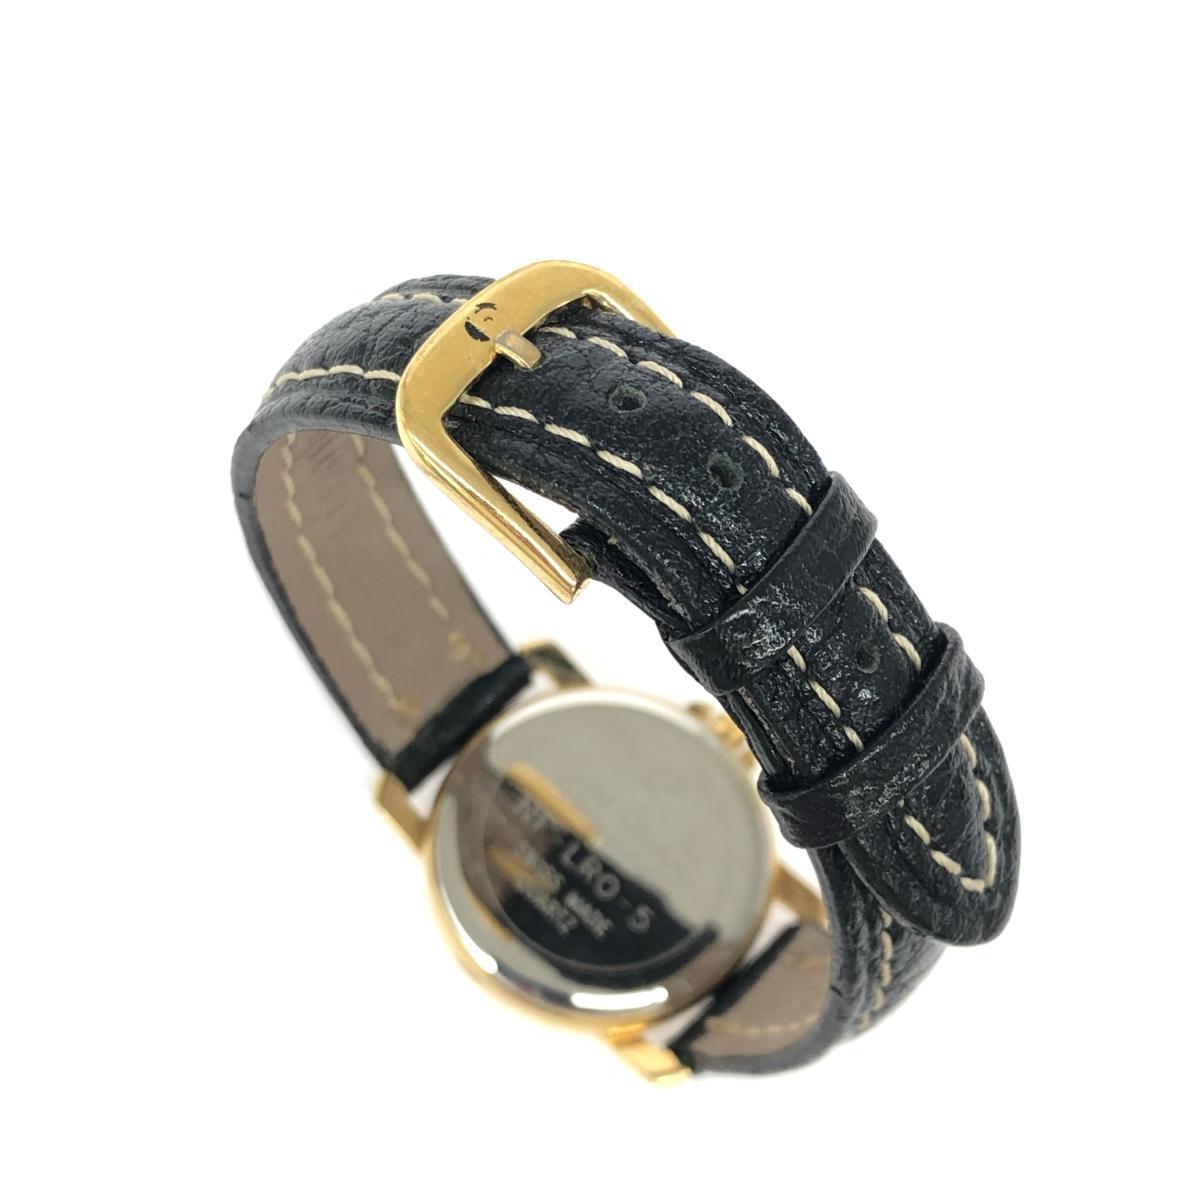 ◆pierre cardin ピエールカルダン 腕時計 ◆NF-LRO-5 ブラック/ゴールドカラー SS×レザー レディース ウォッチ watch_画像6